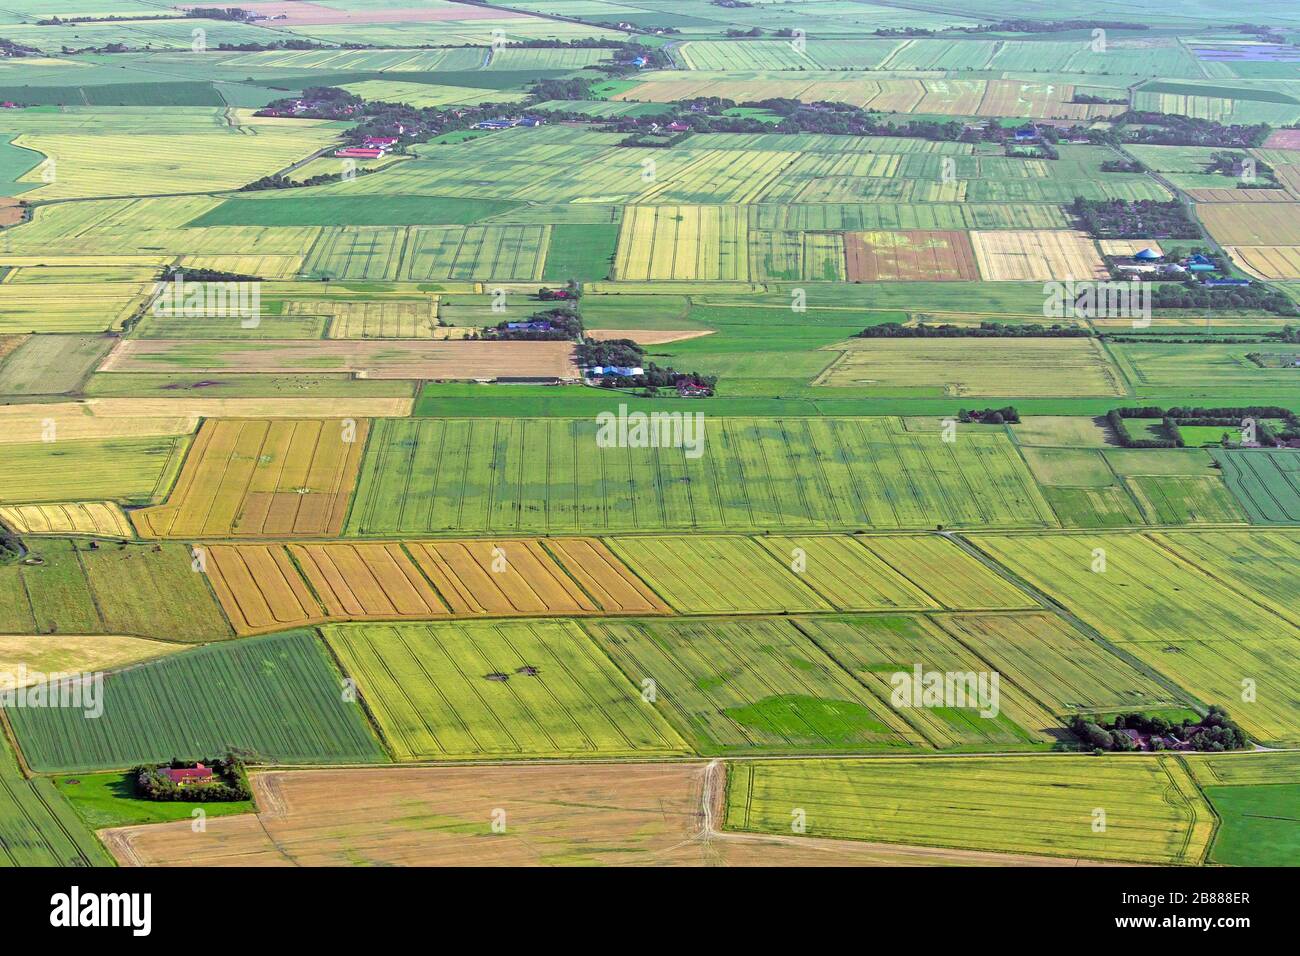 Vue aérienne sur les terres agricoles montrant les voies du tracteur dans les parcelles agricoles / parcelles de terres avec des cultures céréalières et des champs de blé / champs de maïs en été Banque D'Images